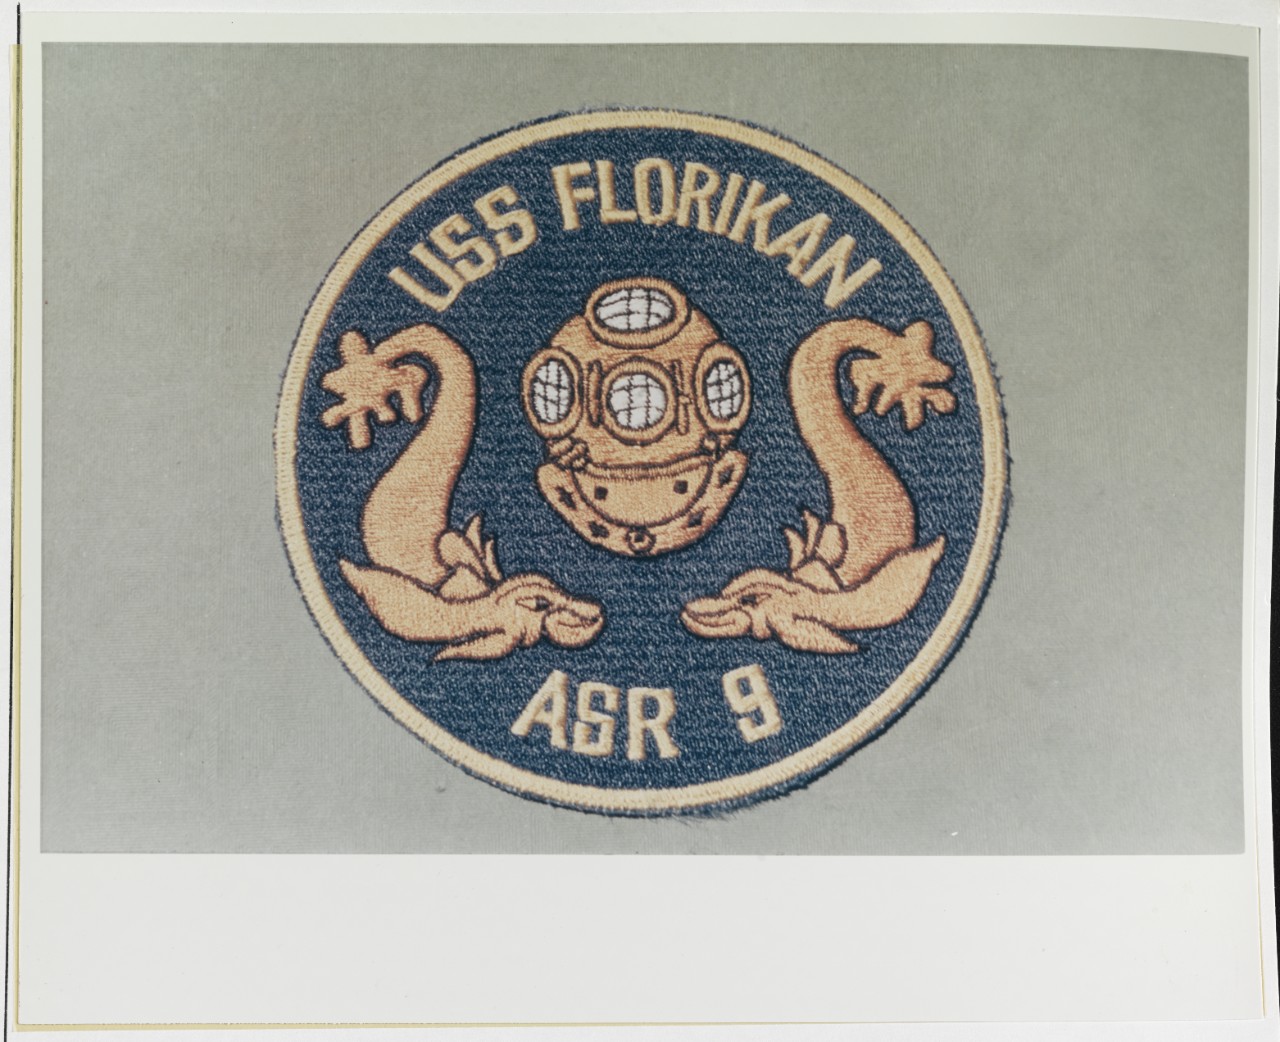 Insignia: USS FLORIKAN (ASR-9)